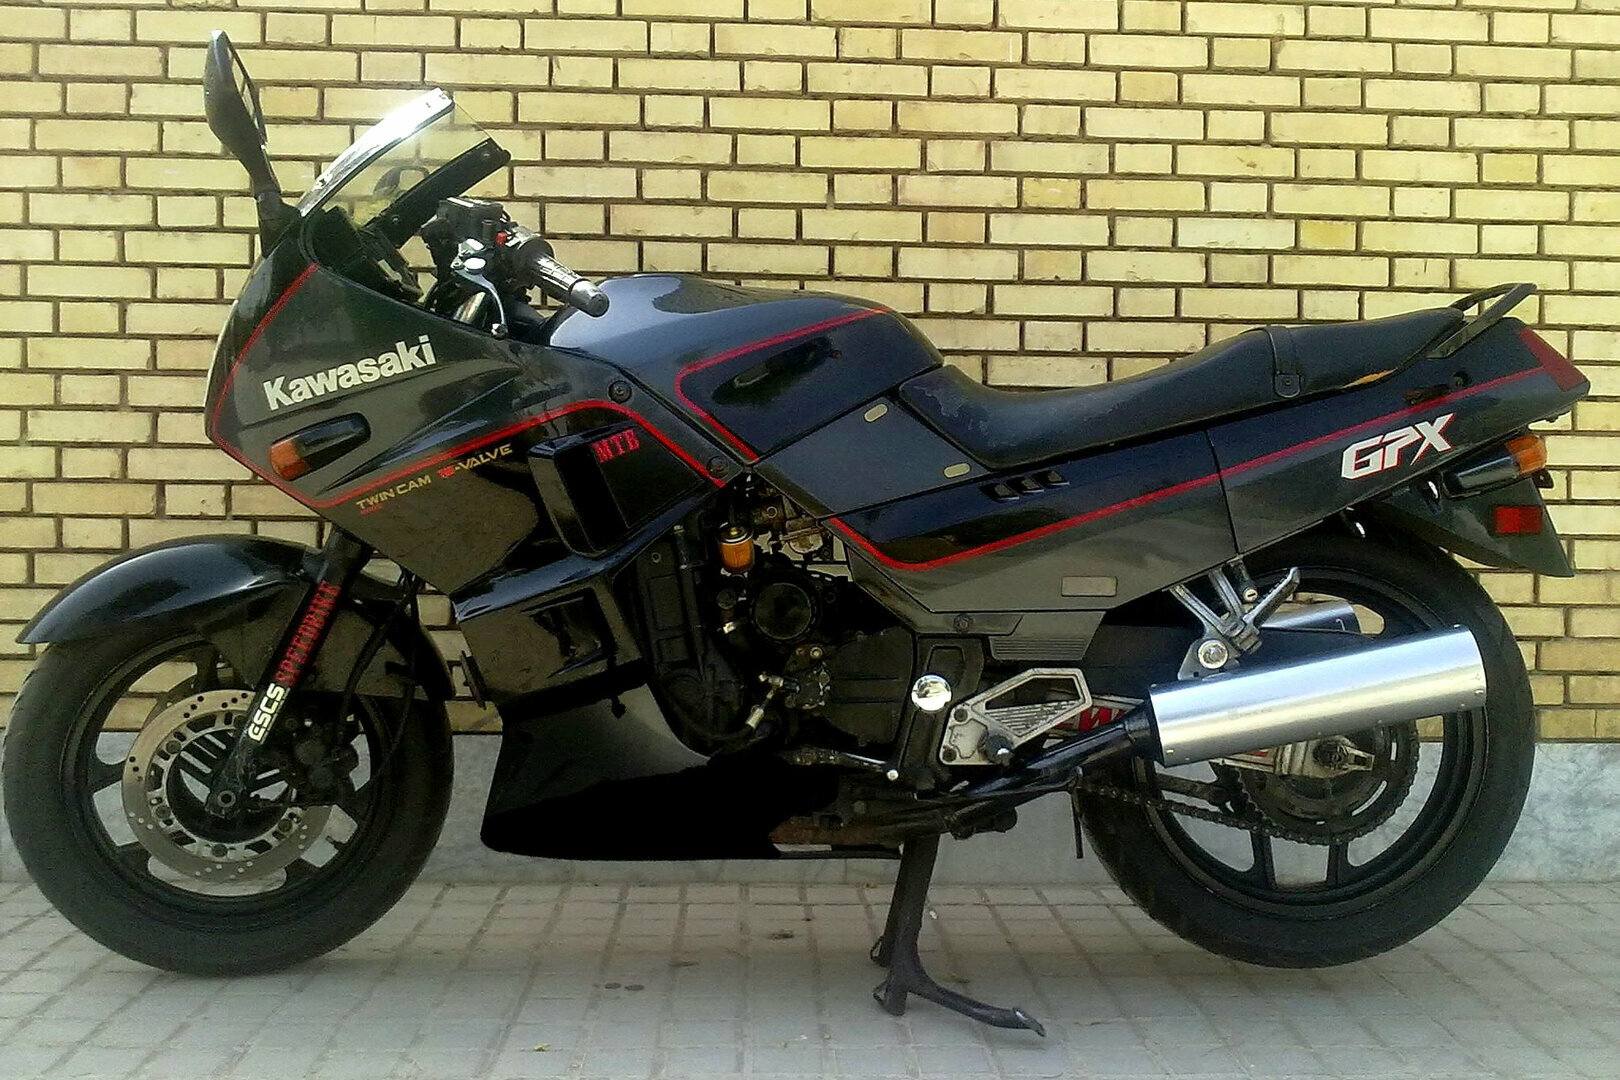 Kawasaki GPX 750 R 3